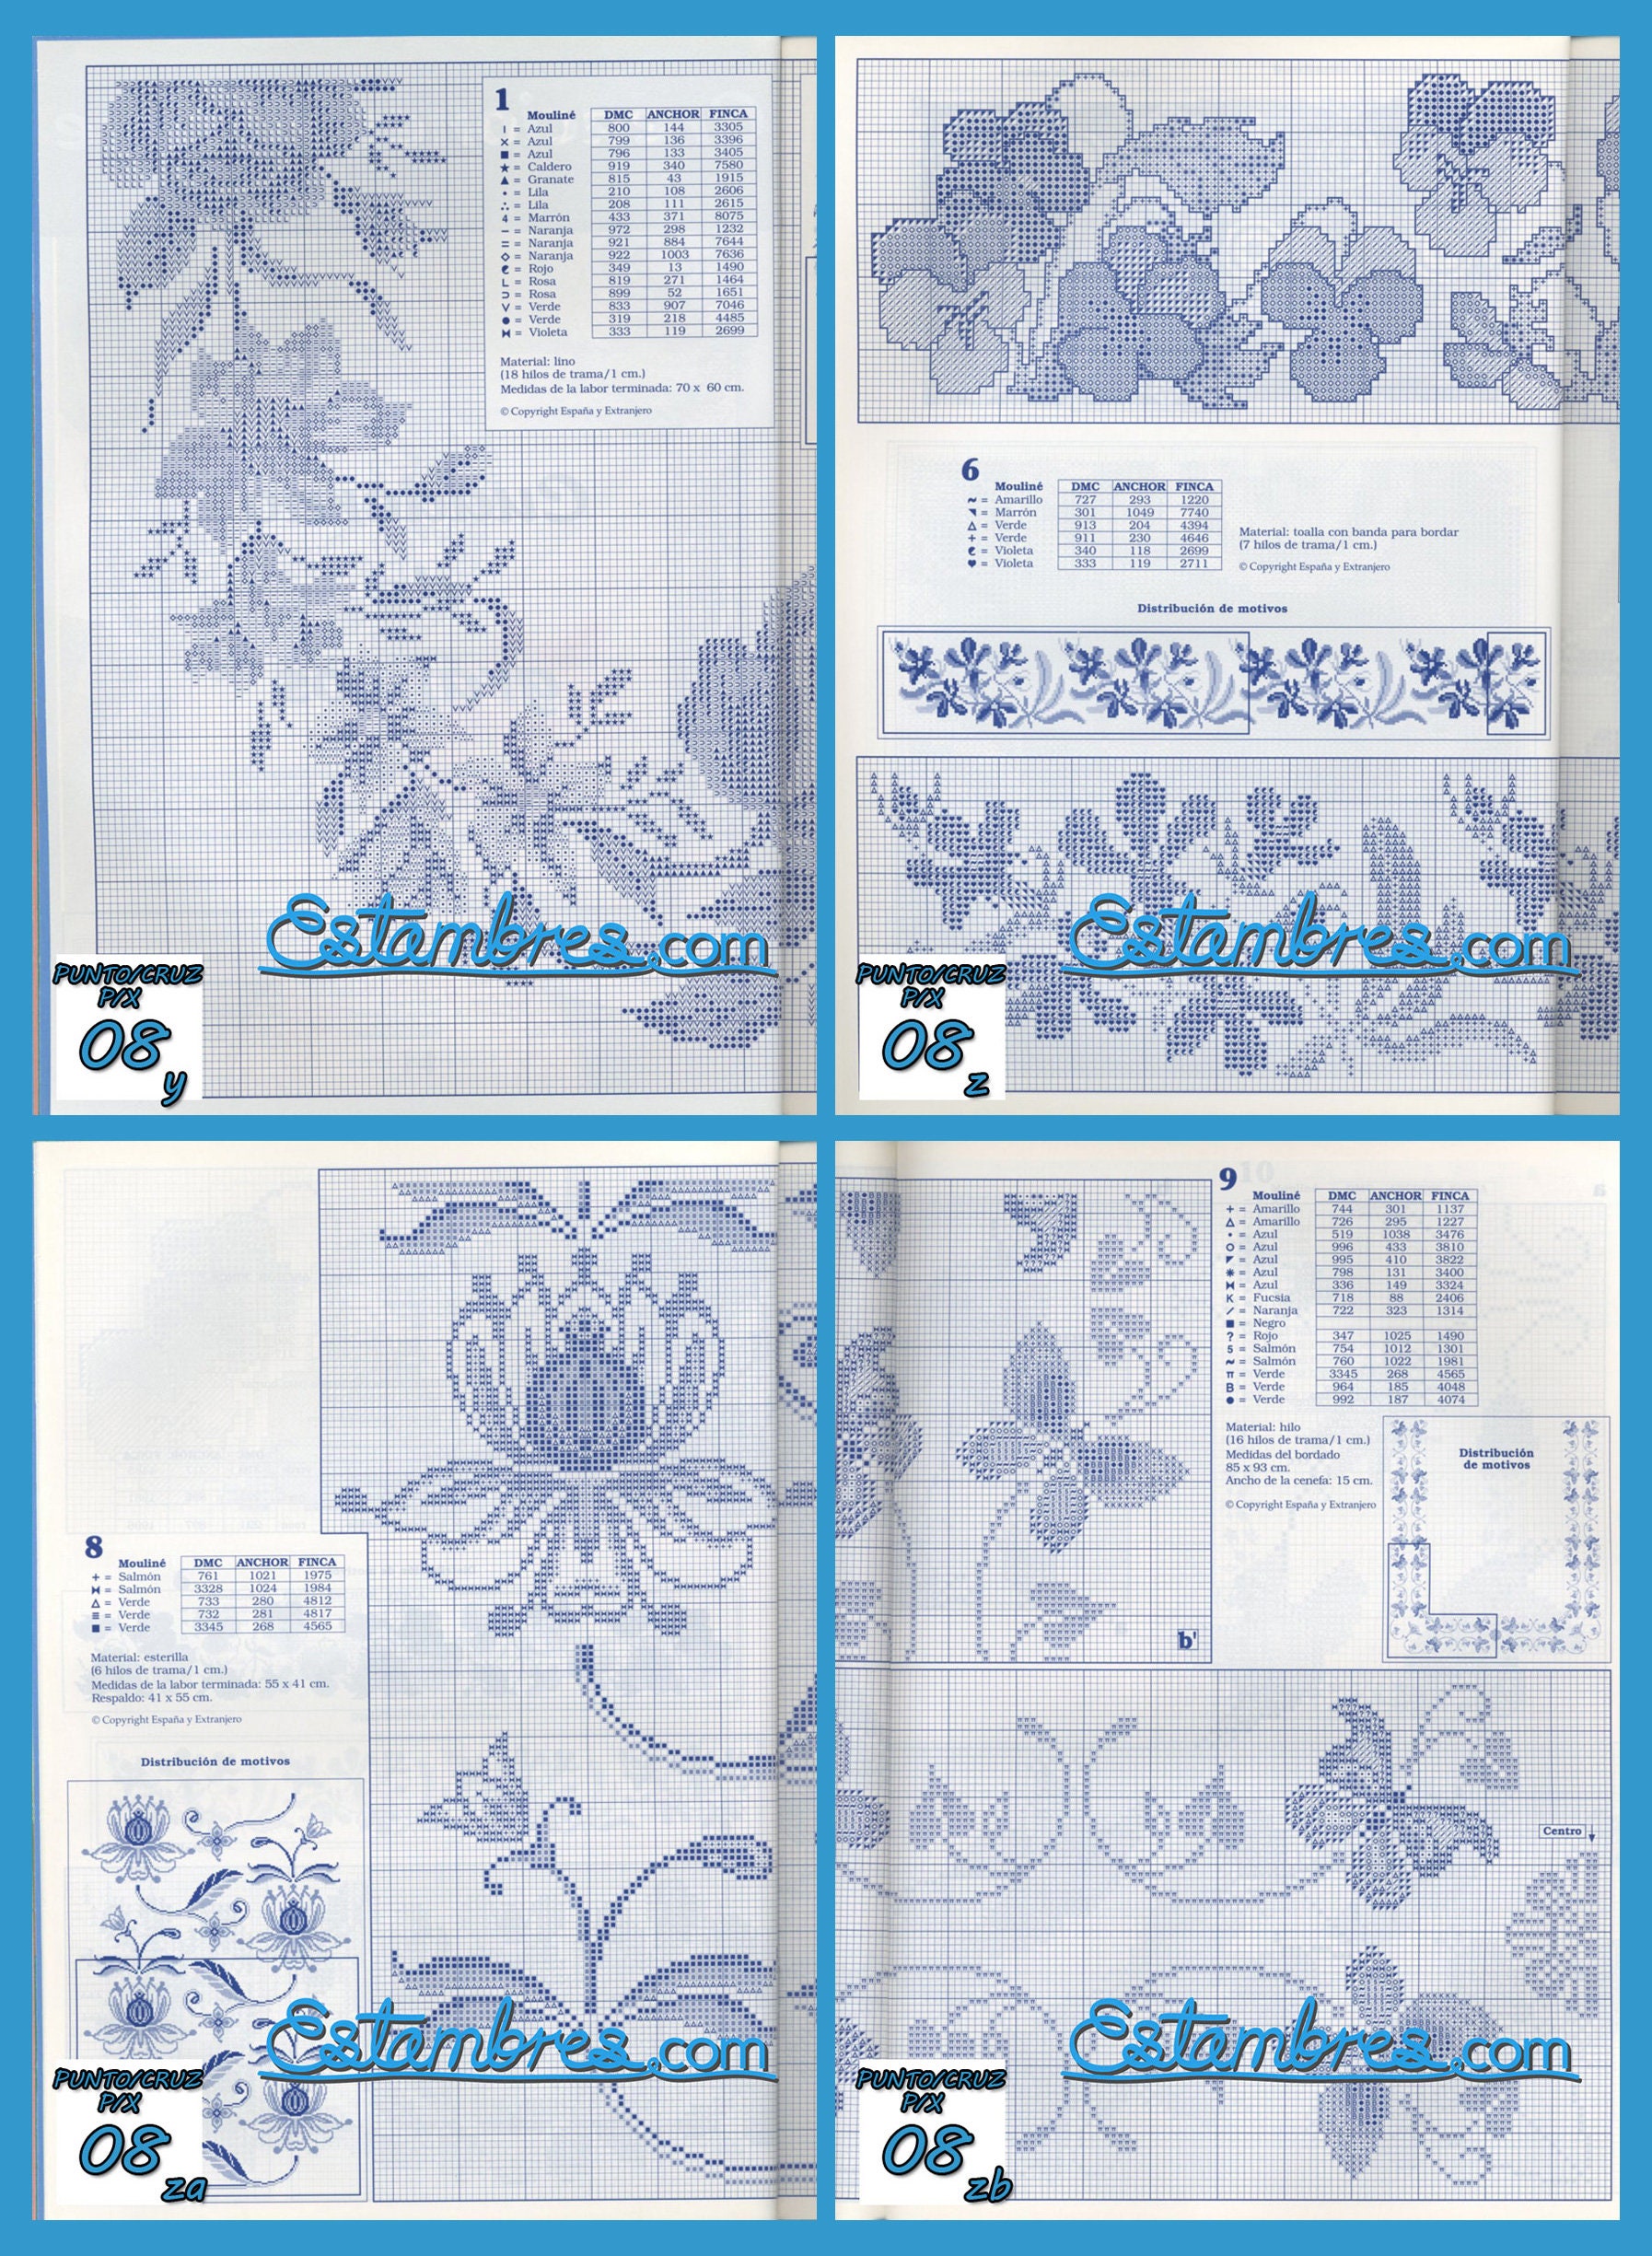 Punto de Cruz No. 08 Creaciones Artime [Embroidery Pattern Magazine] -  Crewel St